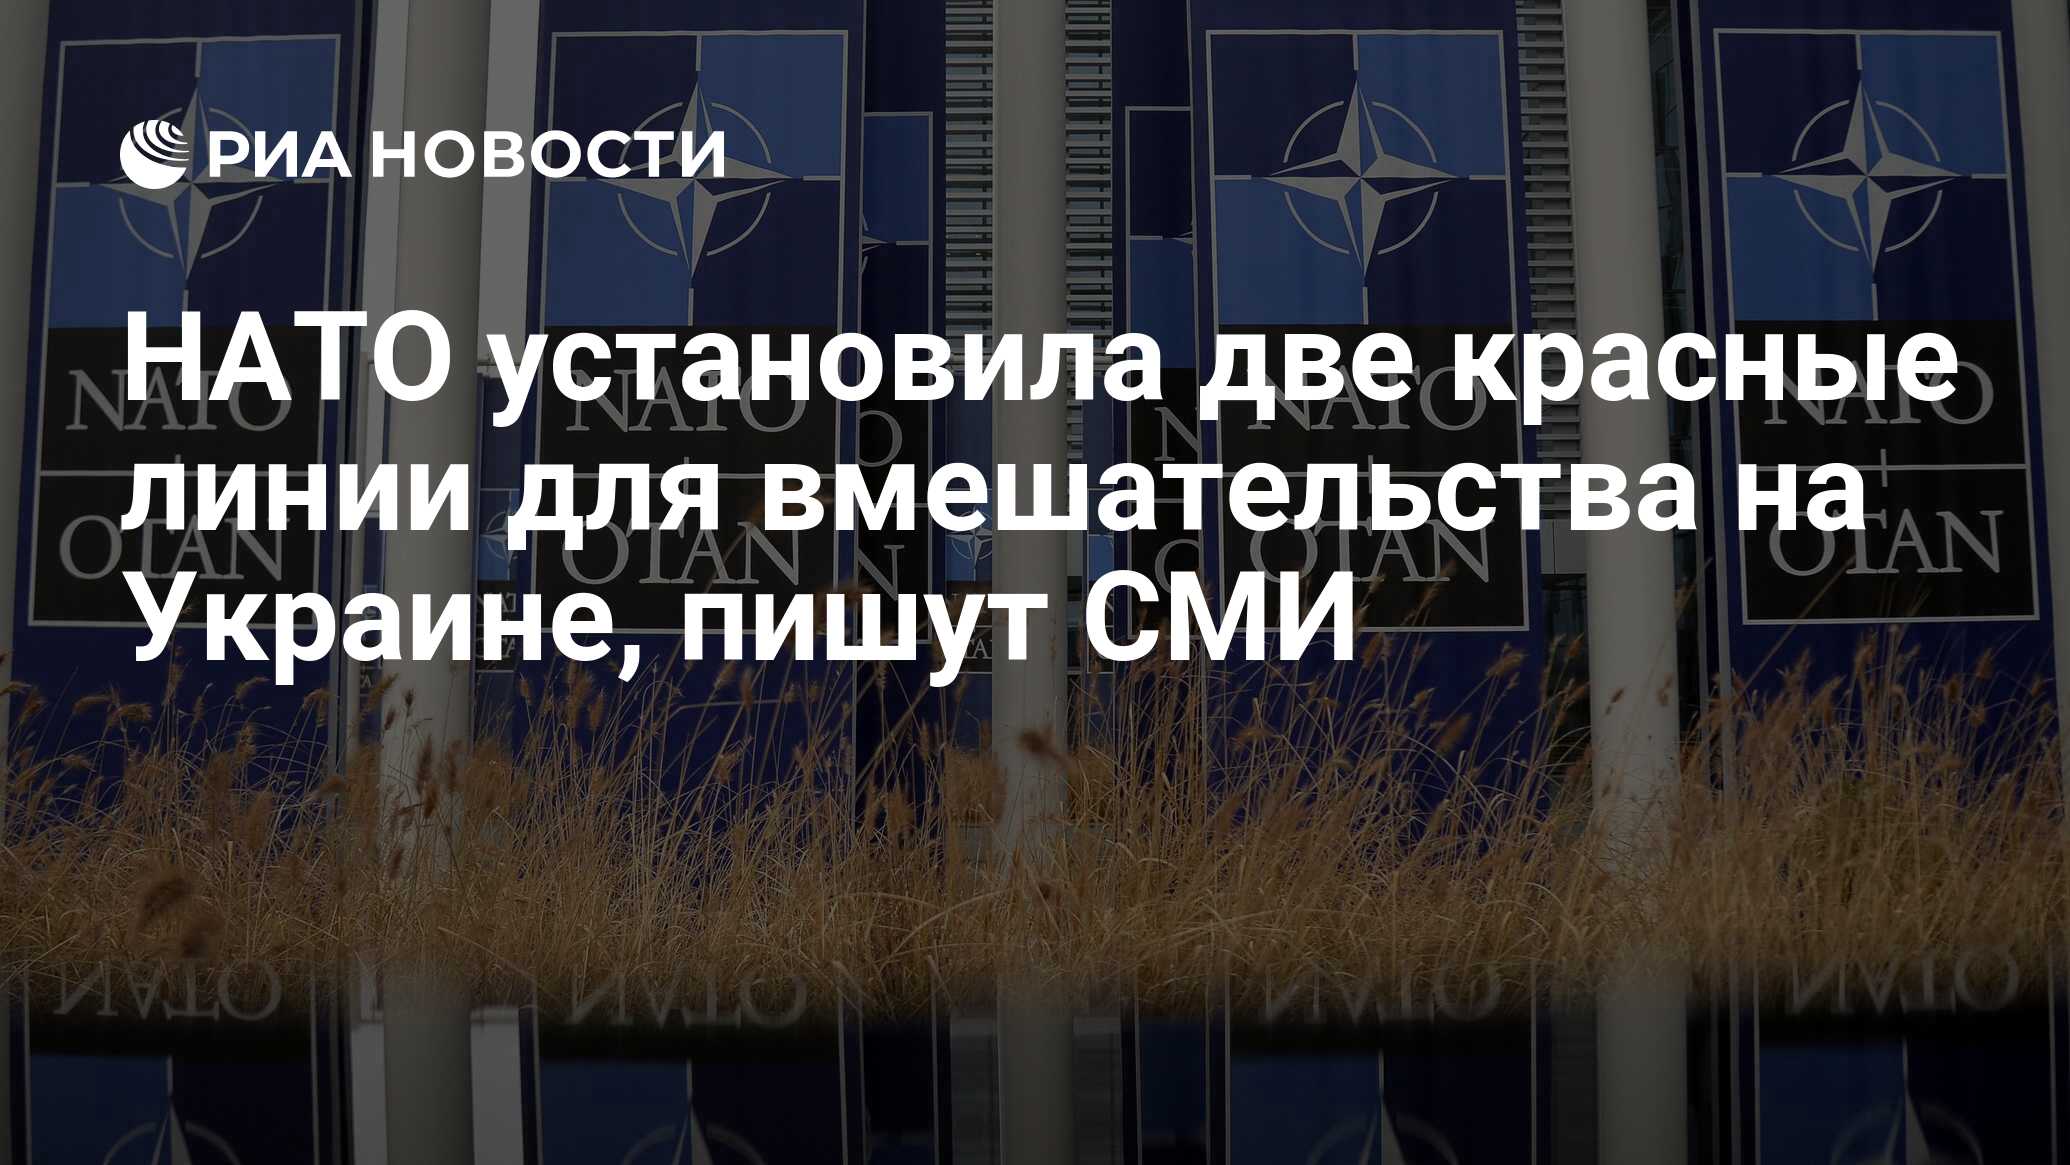 НАТО установила две красные линии для вмешательства на Украине, пишут СМИ